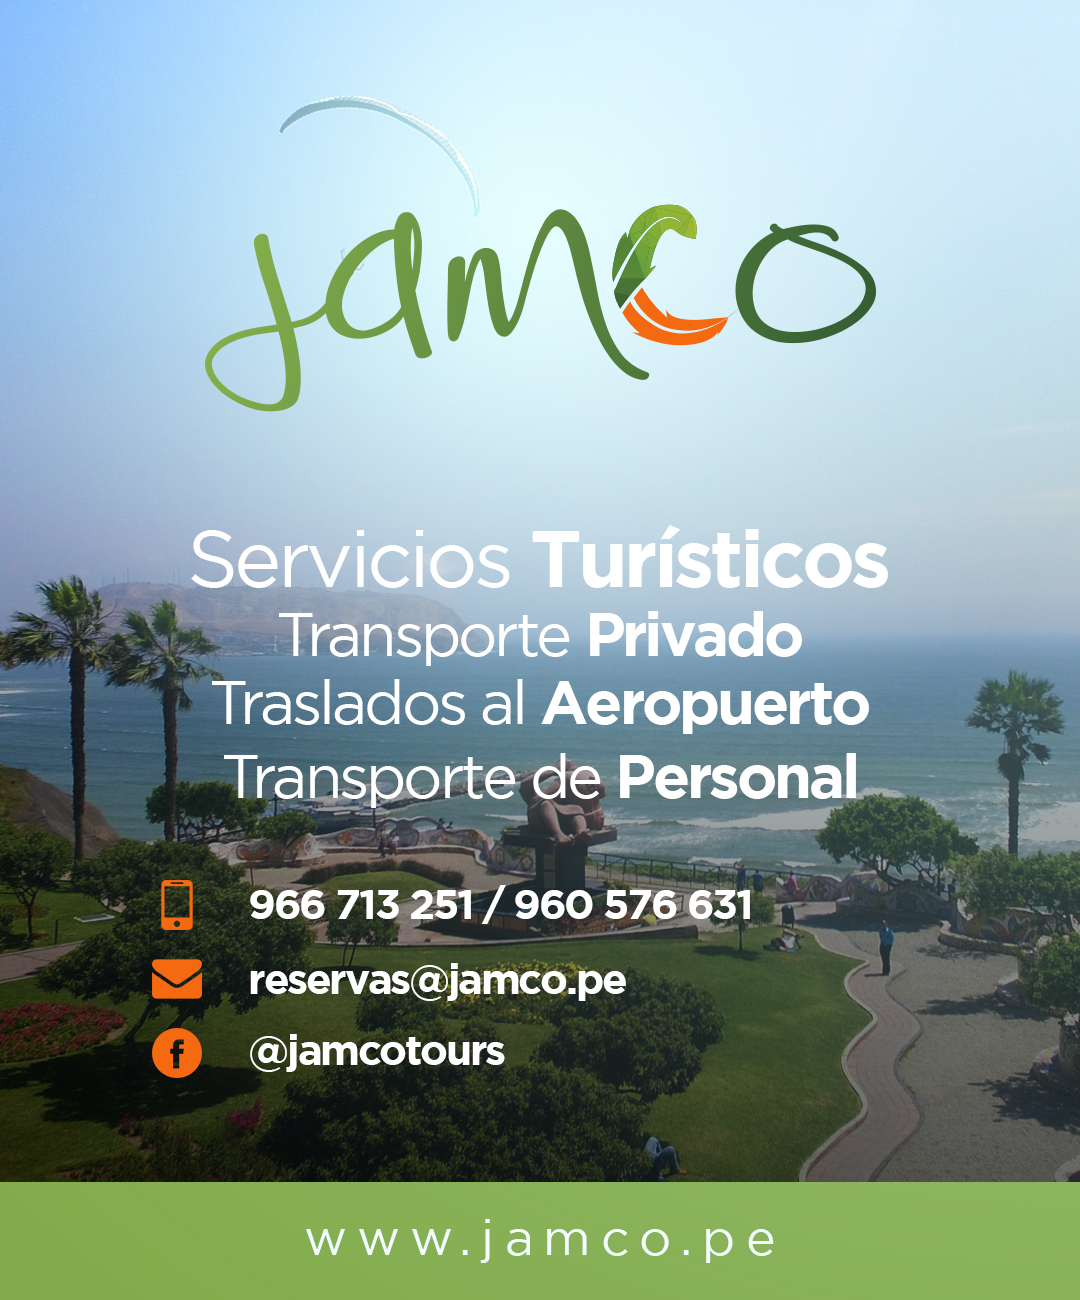 Jamco tours